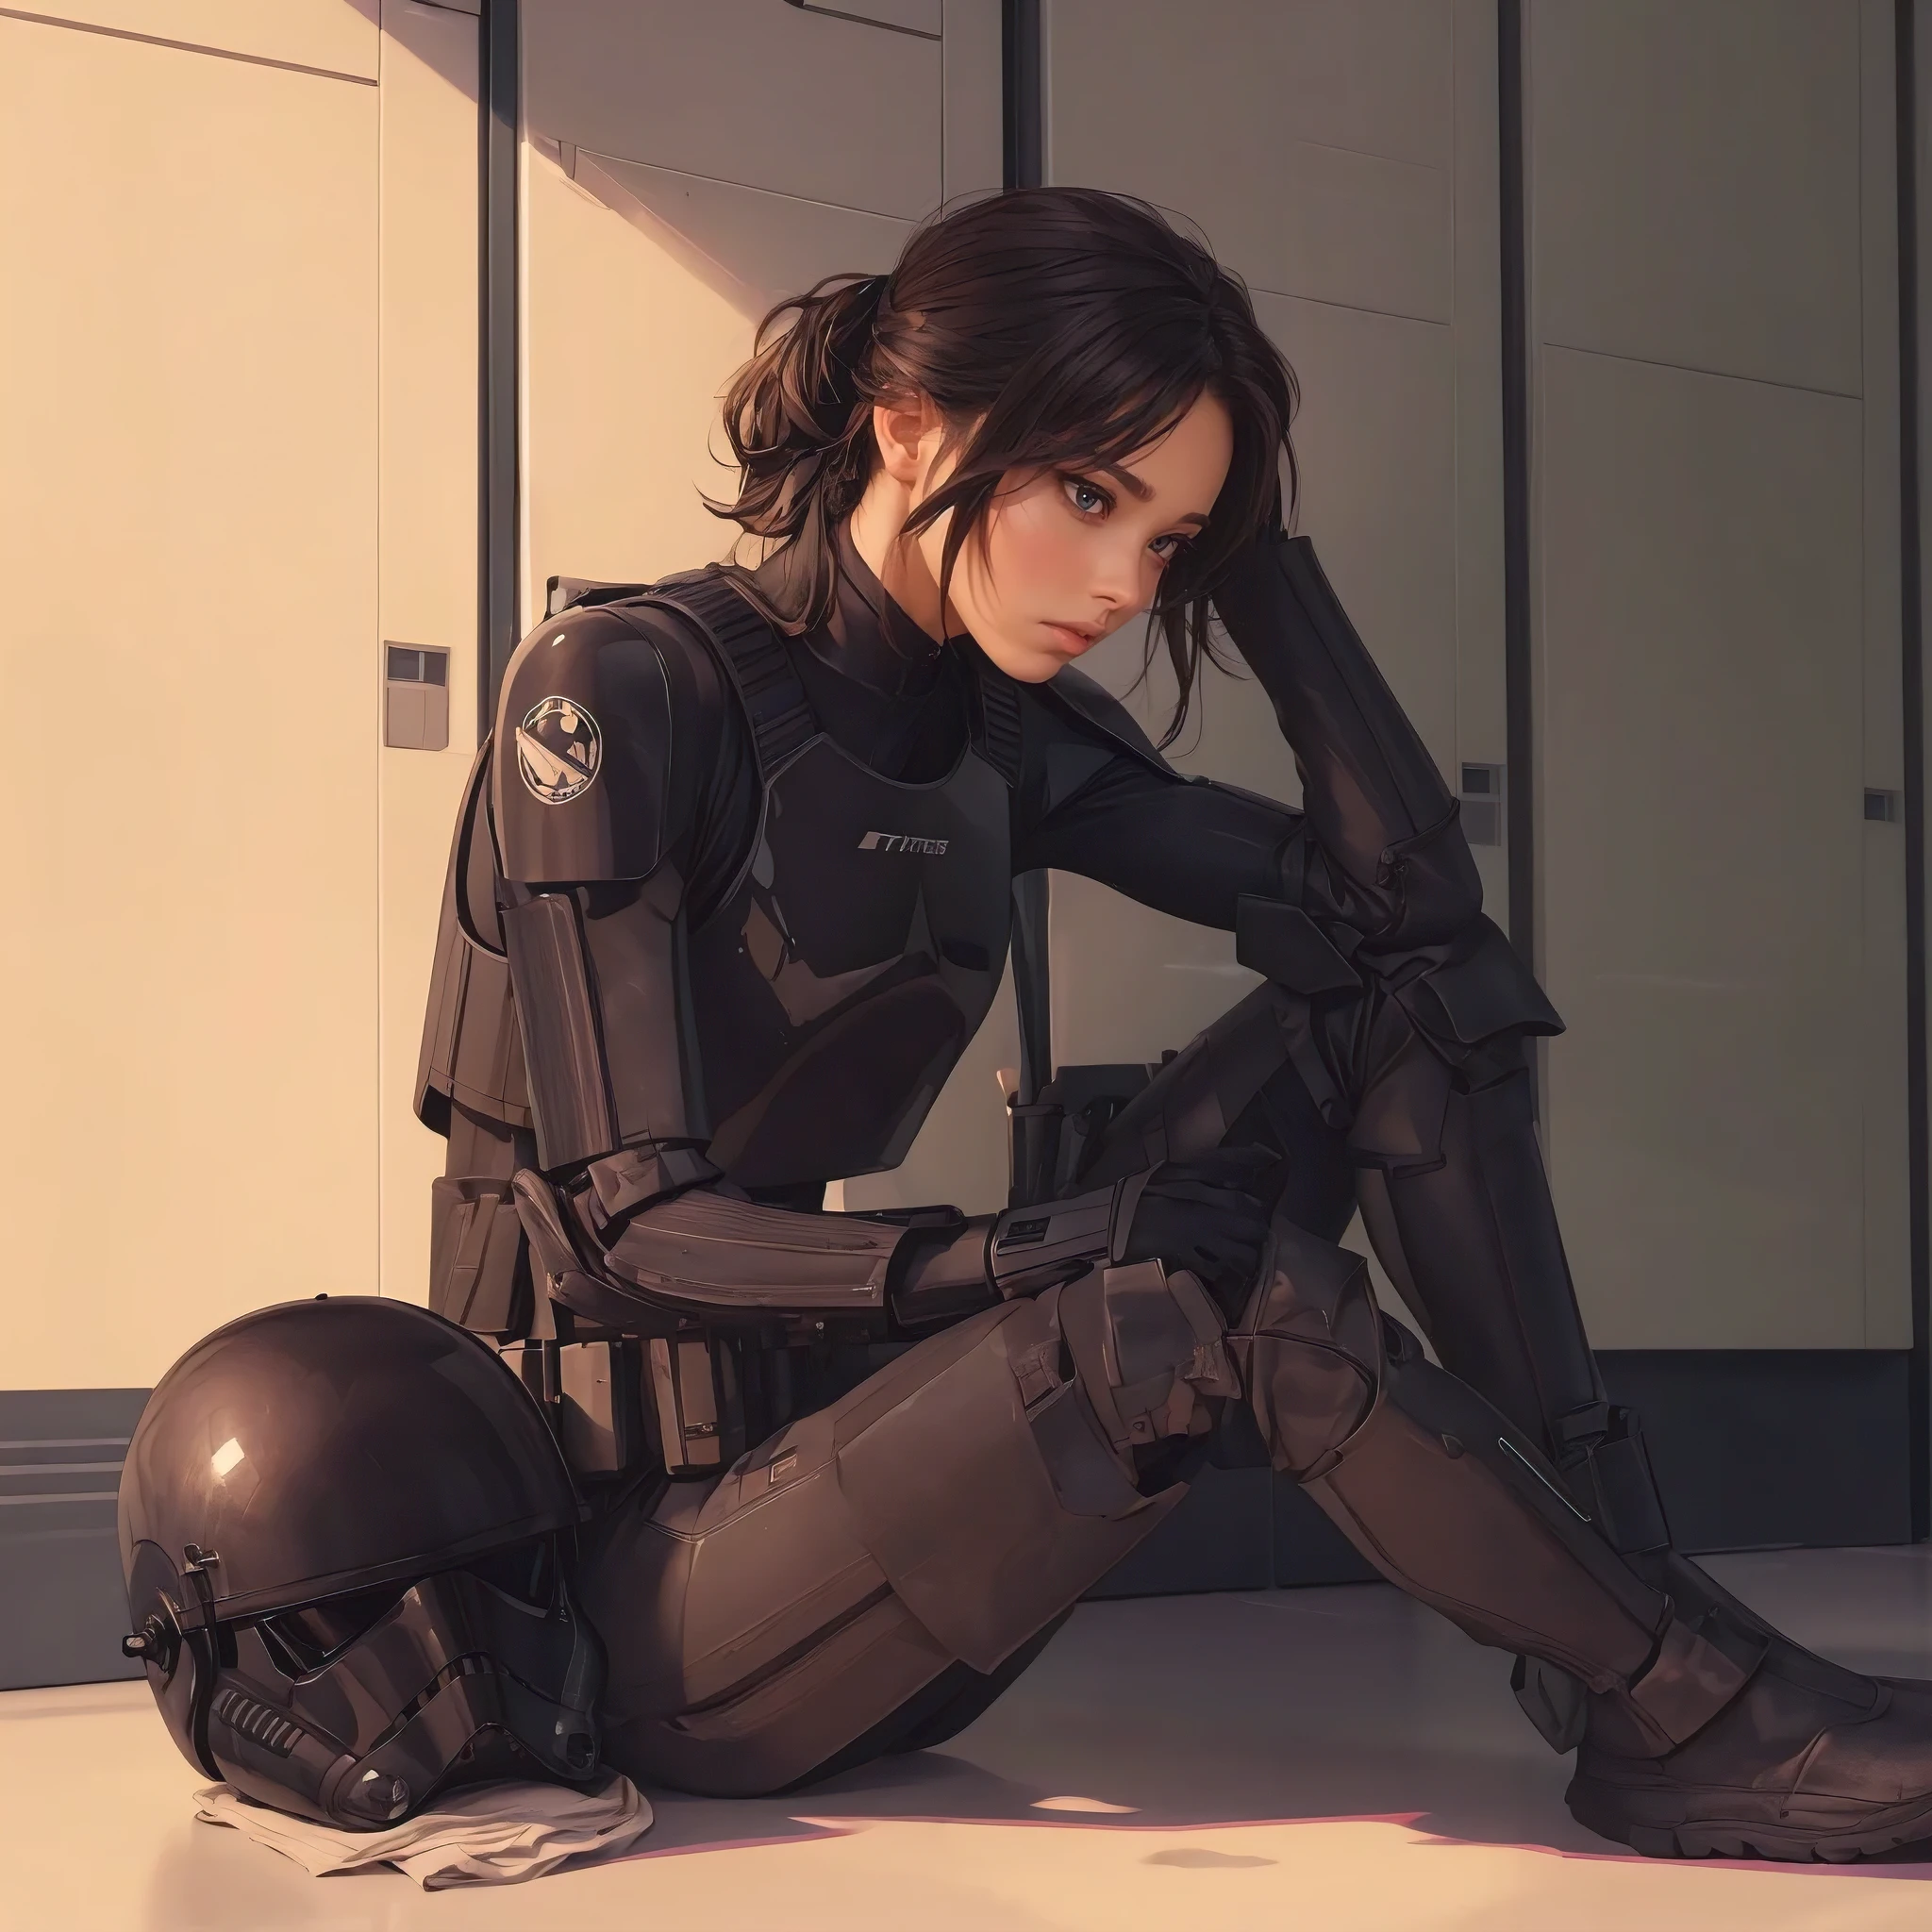 (傑作, ビート品質, 超詳細:1.3), 女性ストームトルーパー, 武器庫のロッカールームに座っている, 黒いパイロットアーマー, 床に置かれた黒いヘルメット, 全身, シンプルなキャラクターデザイン